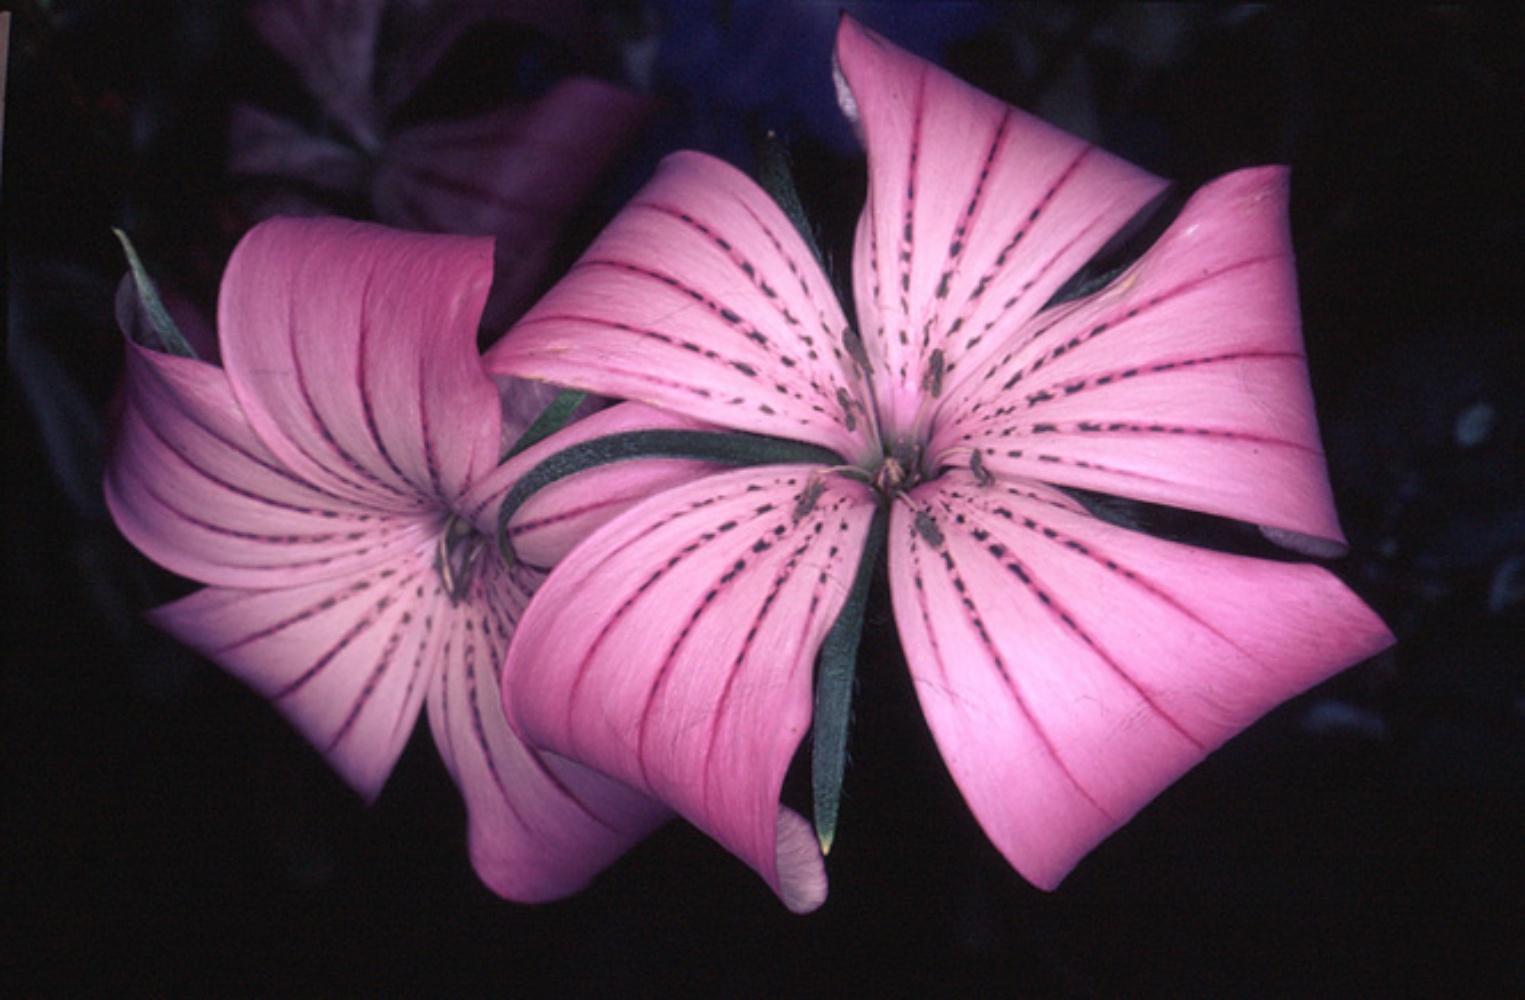 Nobuyoshi ARAKI (*1940, Japan)
Blumen-Rondeau #089, 1997
RP Direktdruck
Blatt 50,8 x 60 cm (20 x 23 5/8 in.)
Nur drucken

- Nobuyoshi Araki
Nobuyoshi Araki (Tokio, 1940) ist ein in Tokio lebender Fotograf. Araki schloss sein Studium an der Fakultät